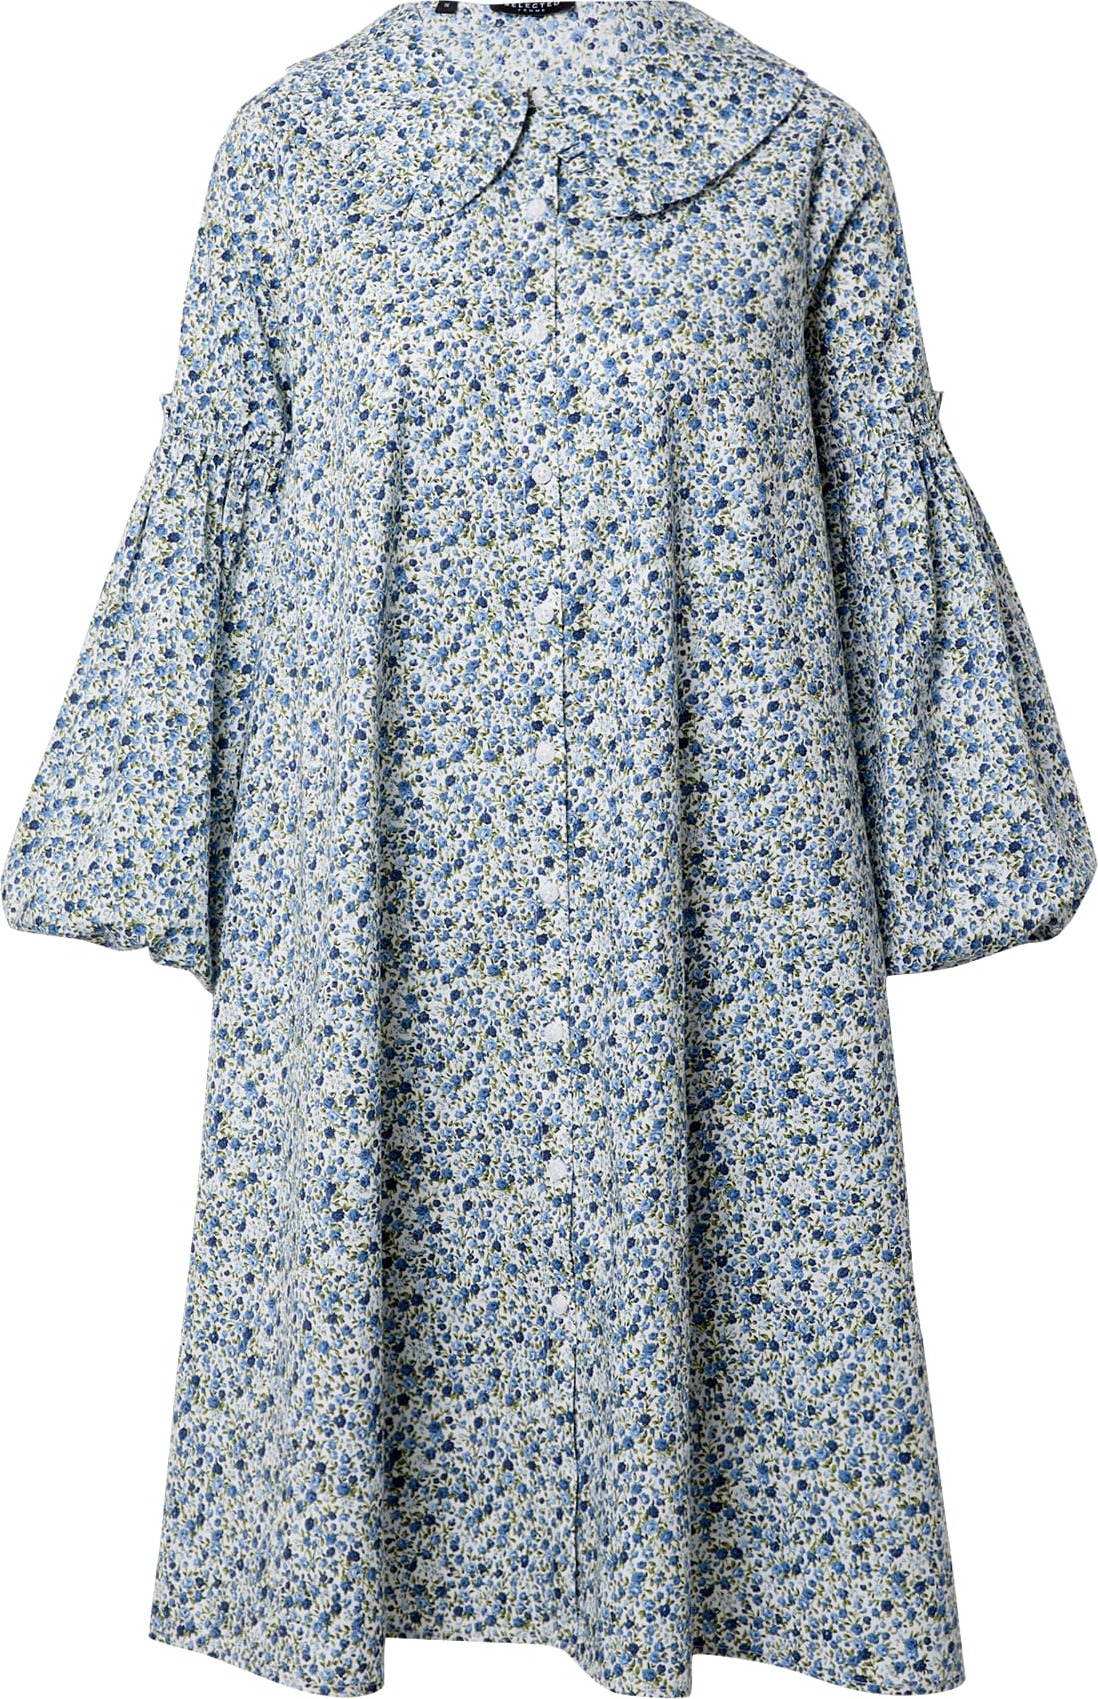 SELECTED FEMME Košilové šaty 'Roman' modrá / nebeská modř / zelená / bílá